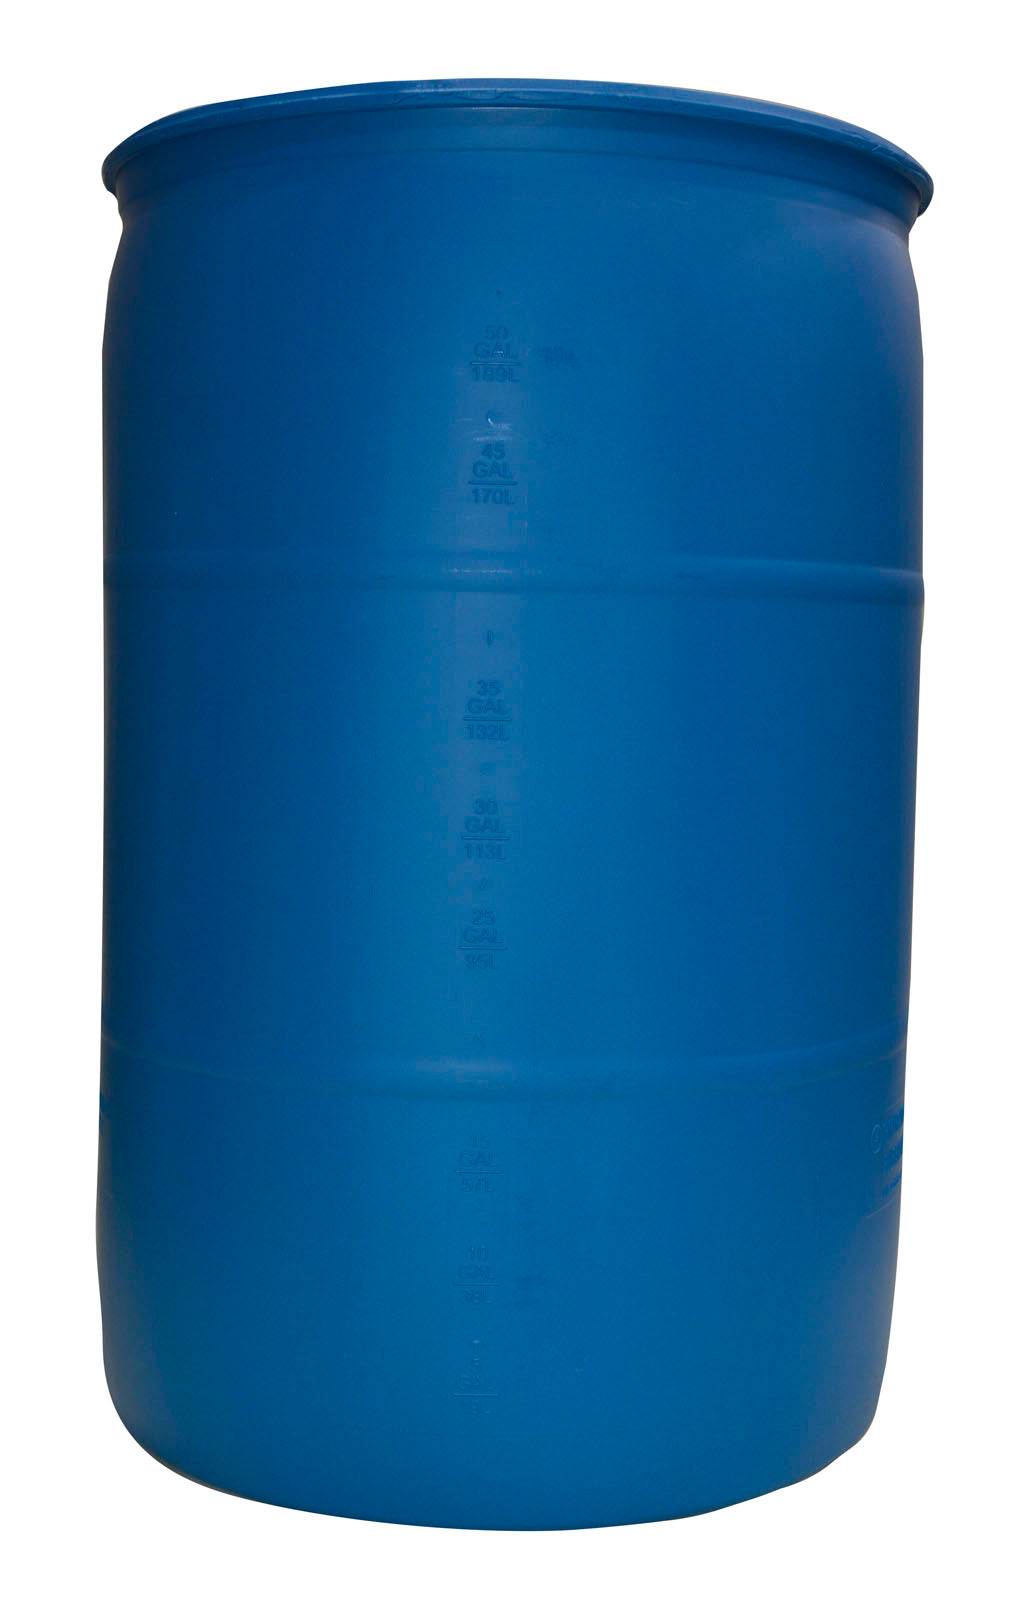 55 Gallon Drum, Blue Plastic Food Grade Barrel